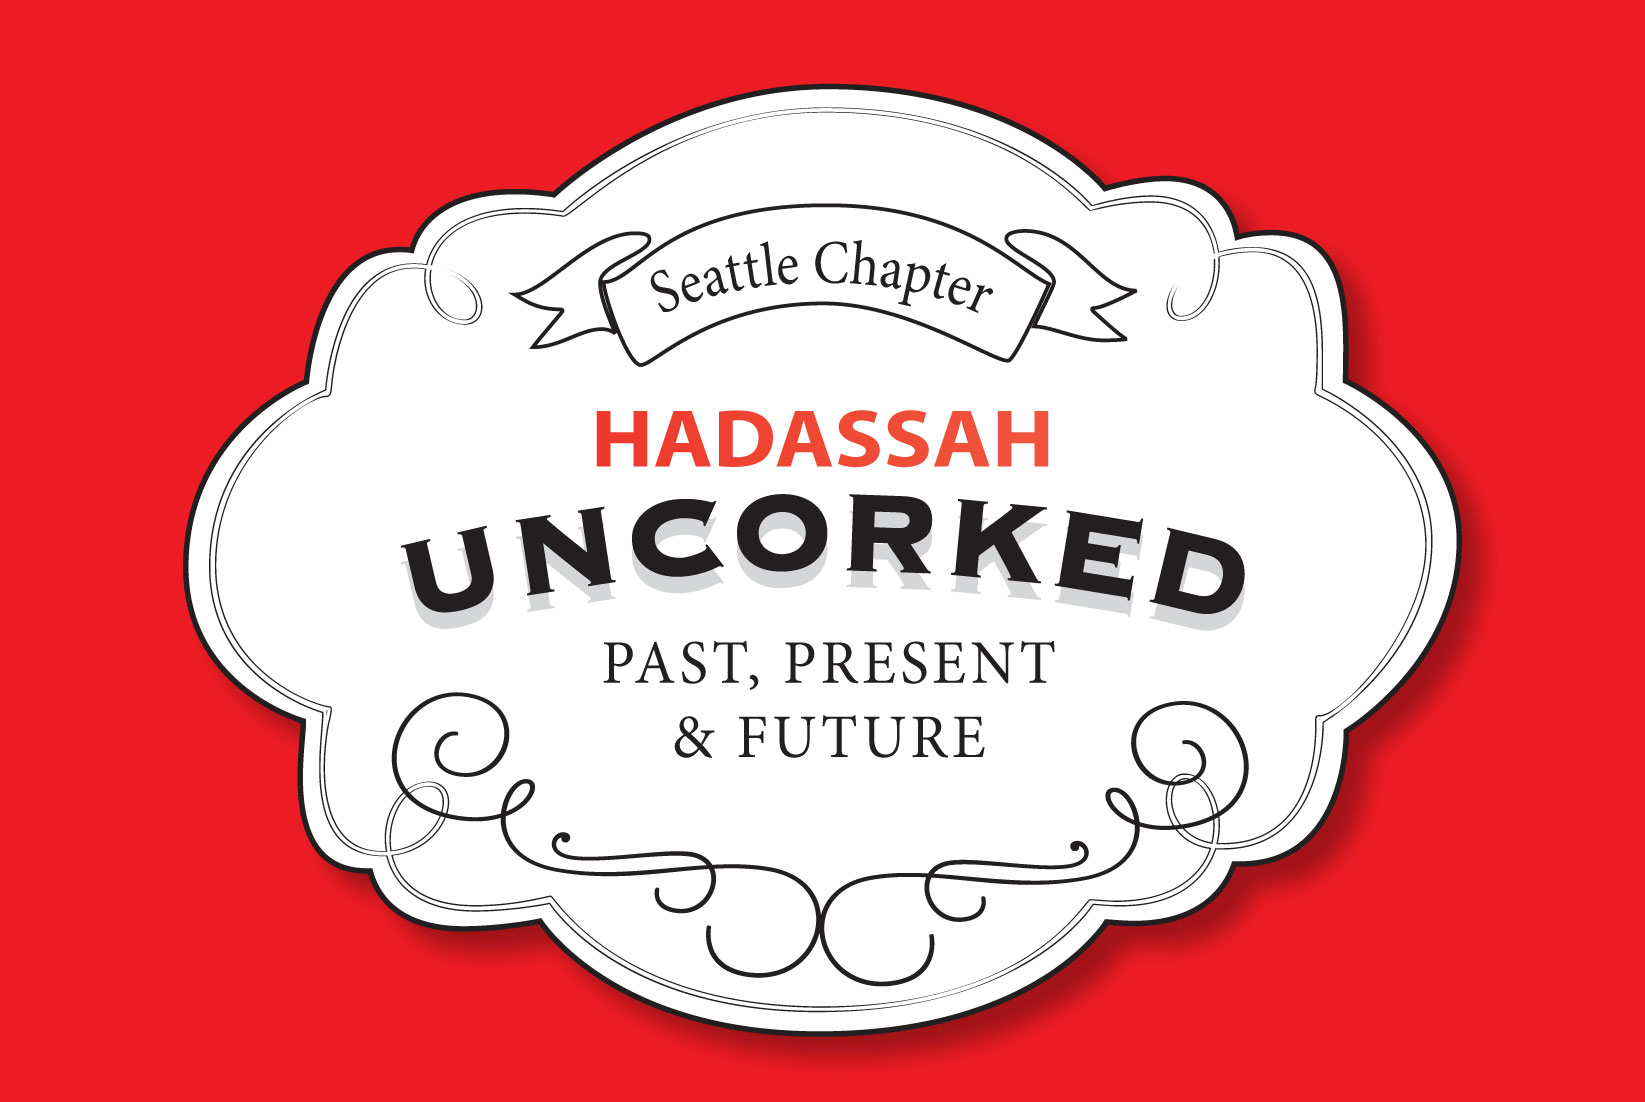 Hadassah_Uncorked_label